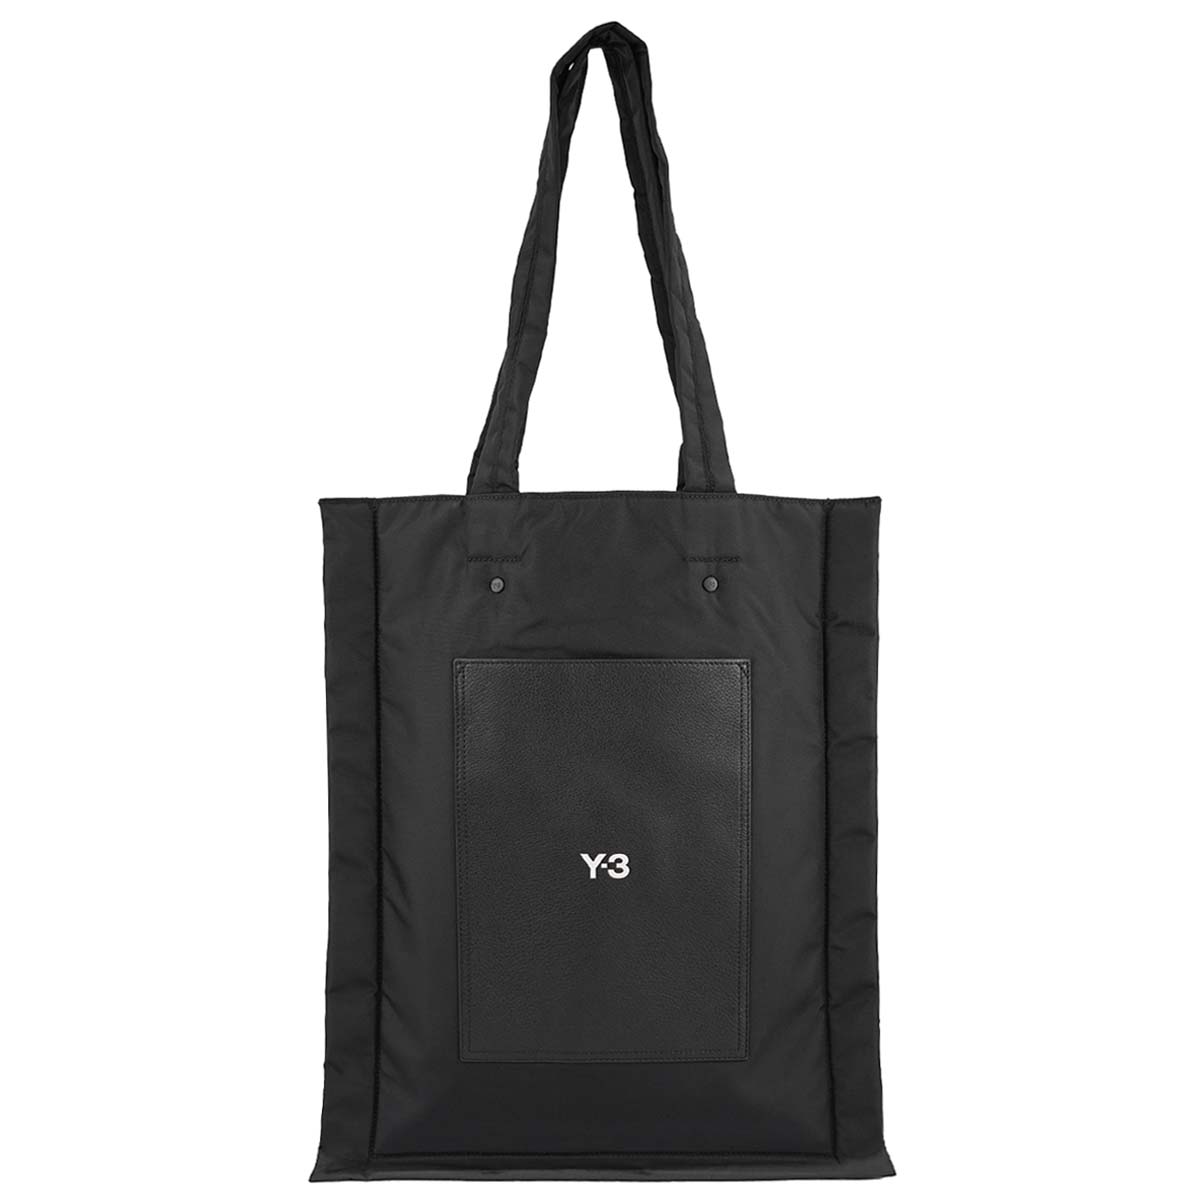 Y-3 ワイスリー トートバッグ IZ2326 Y-3 LUX TOTE メンズ 男性 ヨウジヤマモト adidas アディダス 鞄 バッグ BLACK ブラック